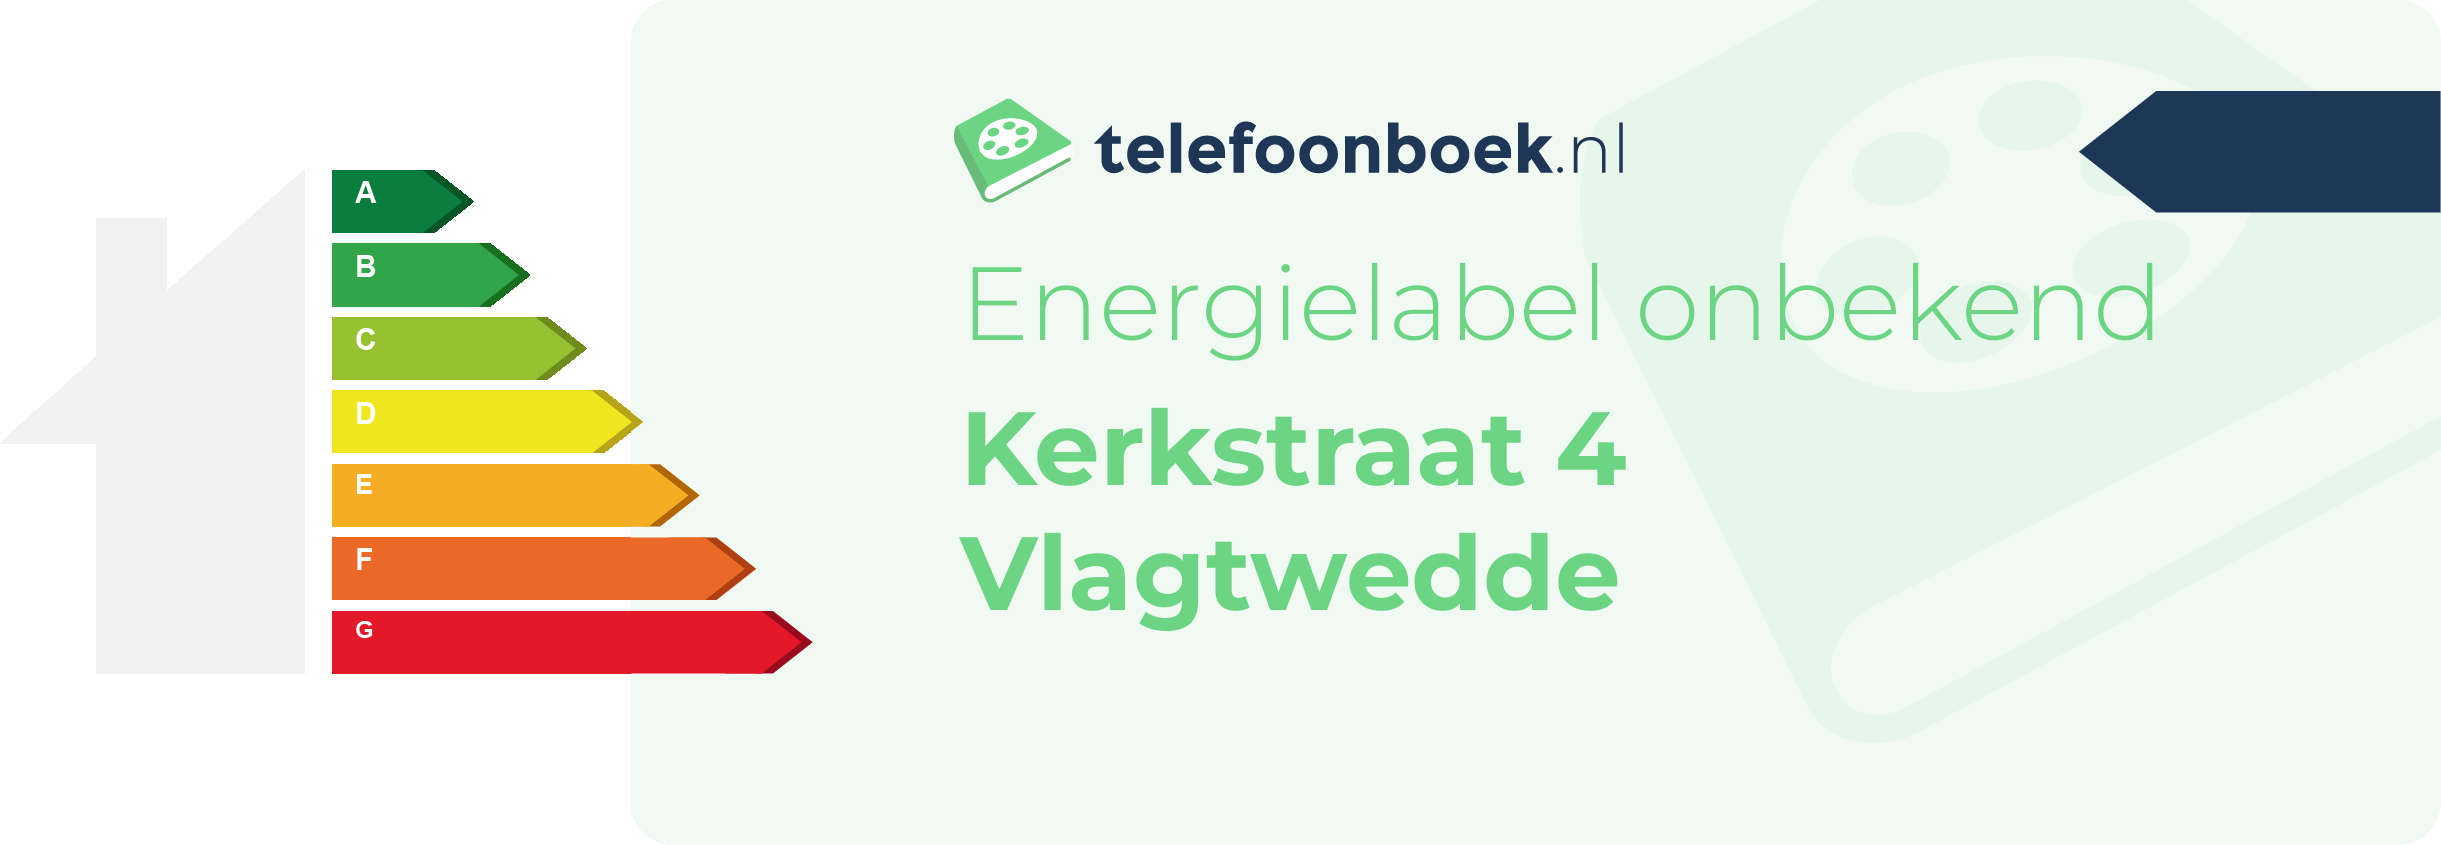 Energielabel Kerkstraat 4 Vlagtwedde